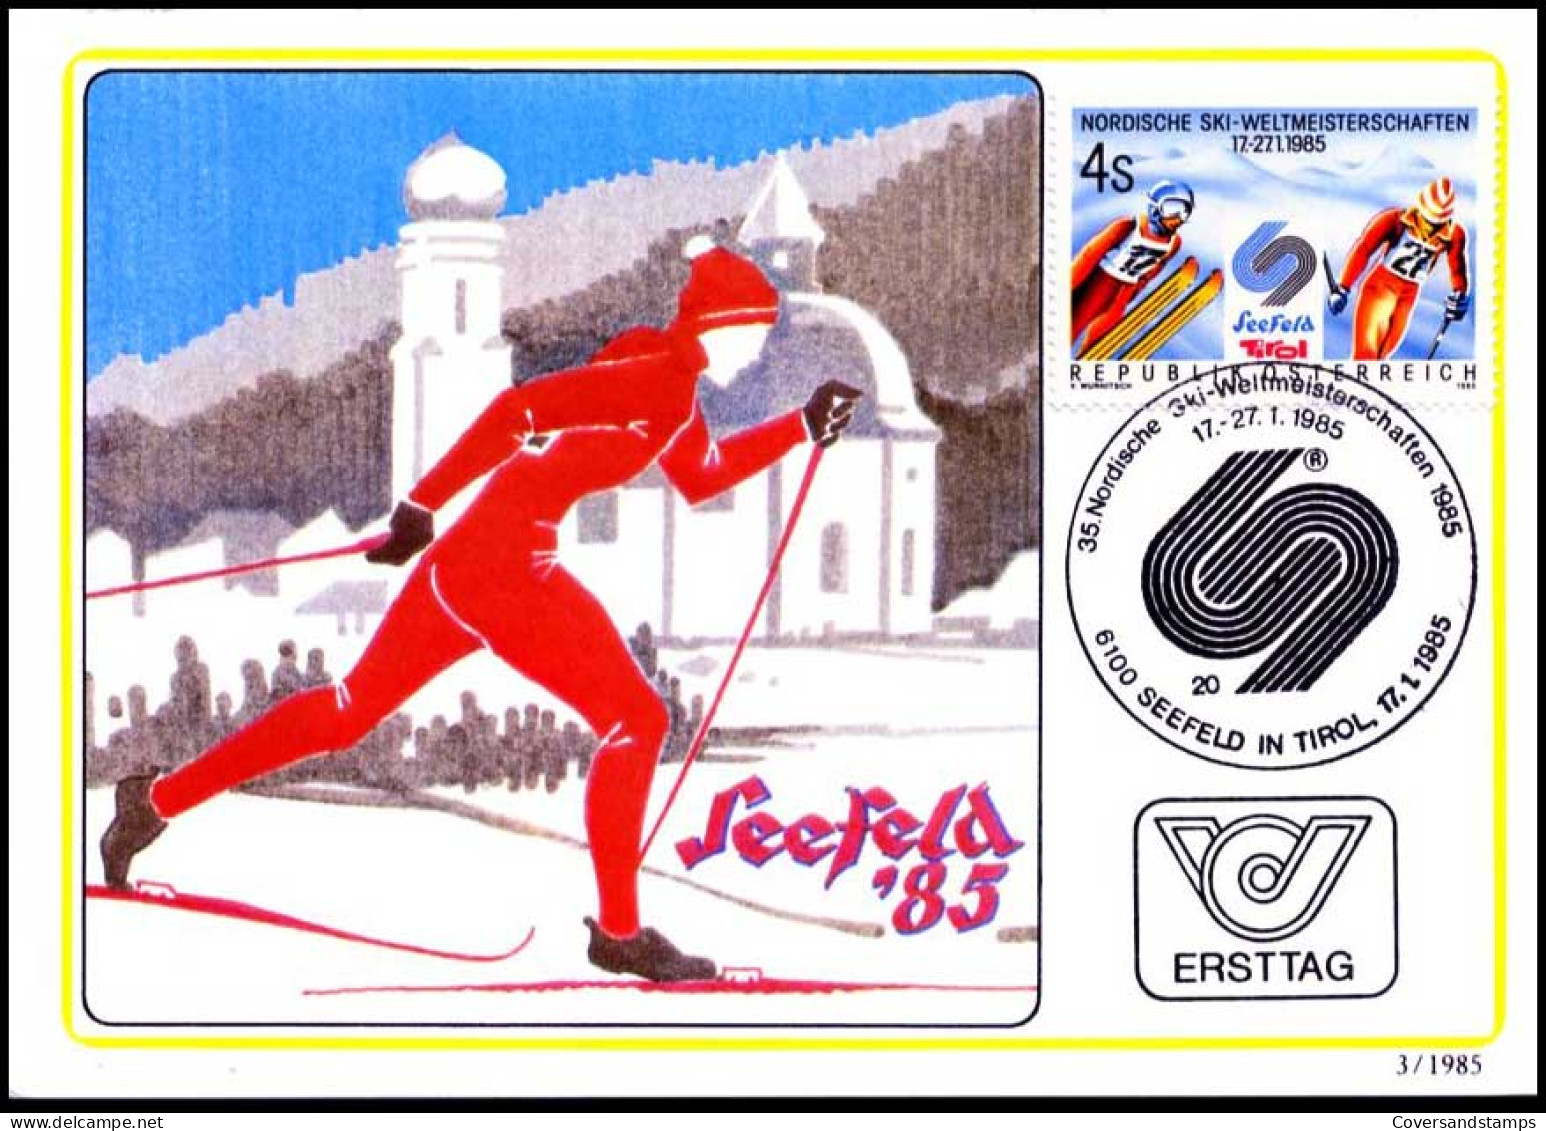 Oostenrijk - MK - Nordische Ski-weltmeisterschaften                                           - Cartes-Maximum (CM)